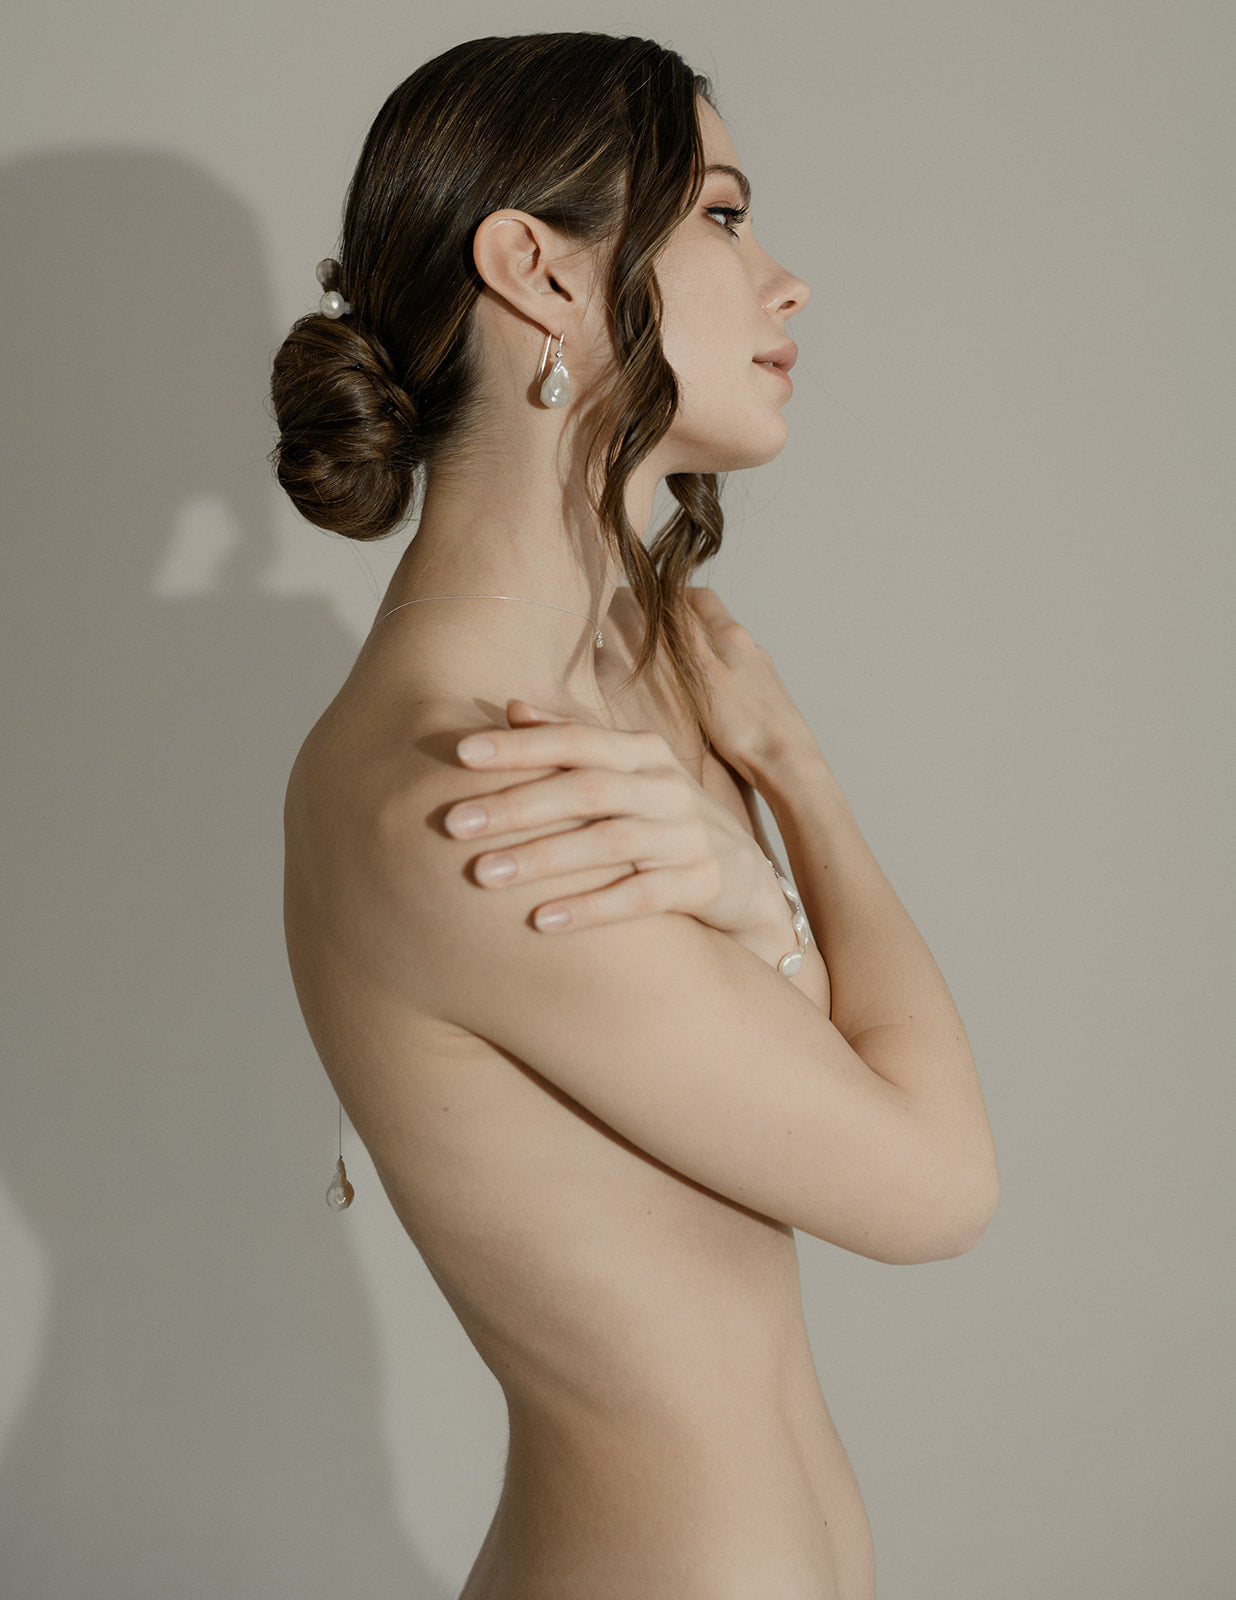 Femme nu de manière artistique avec les cheveux attachés mettant en avant une parure de bijoux de mariage baroque